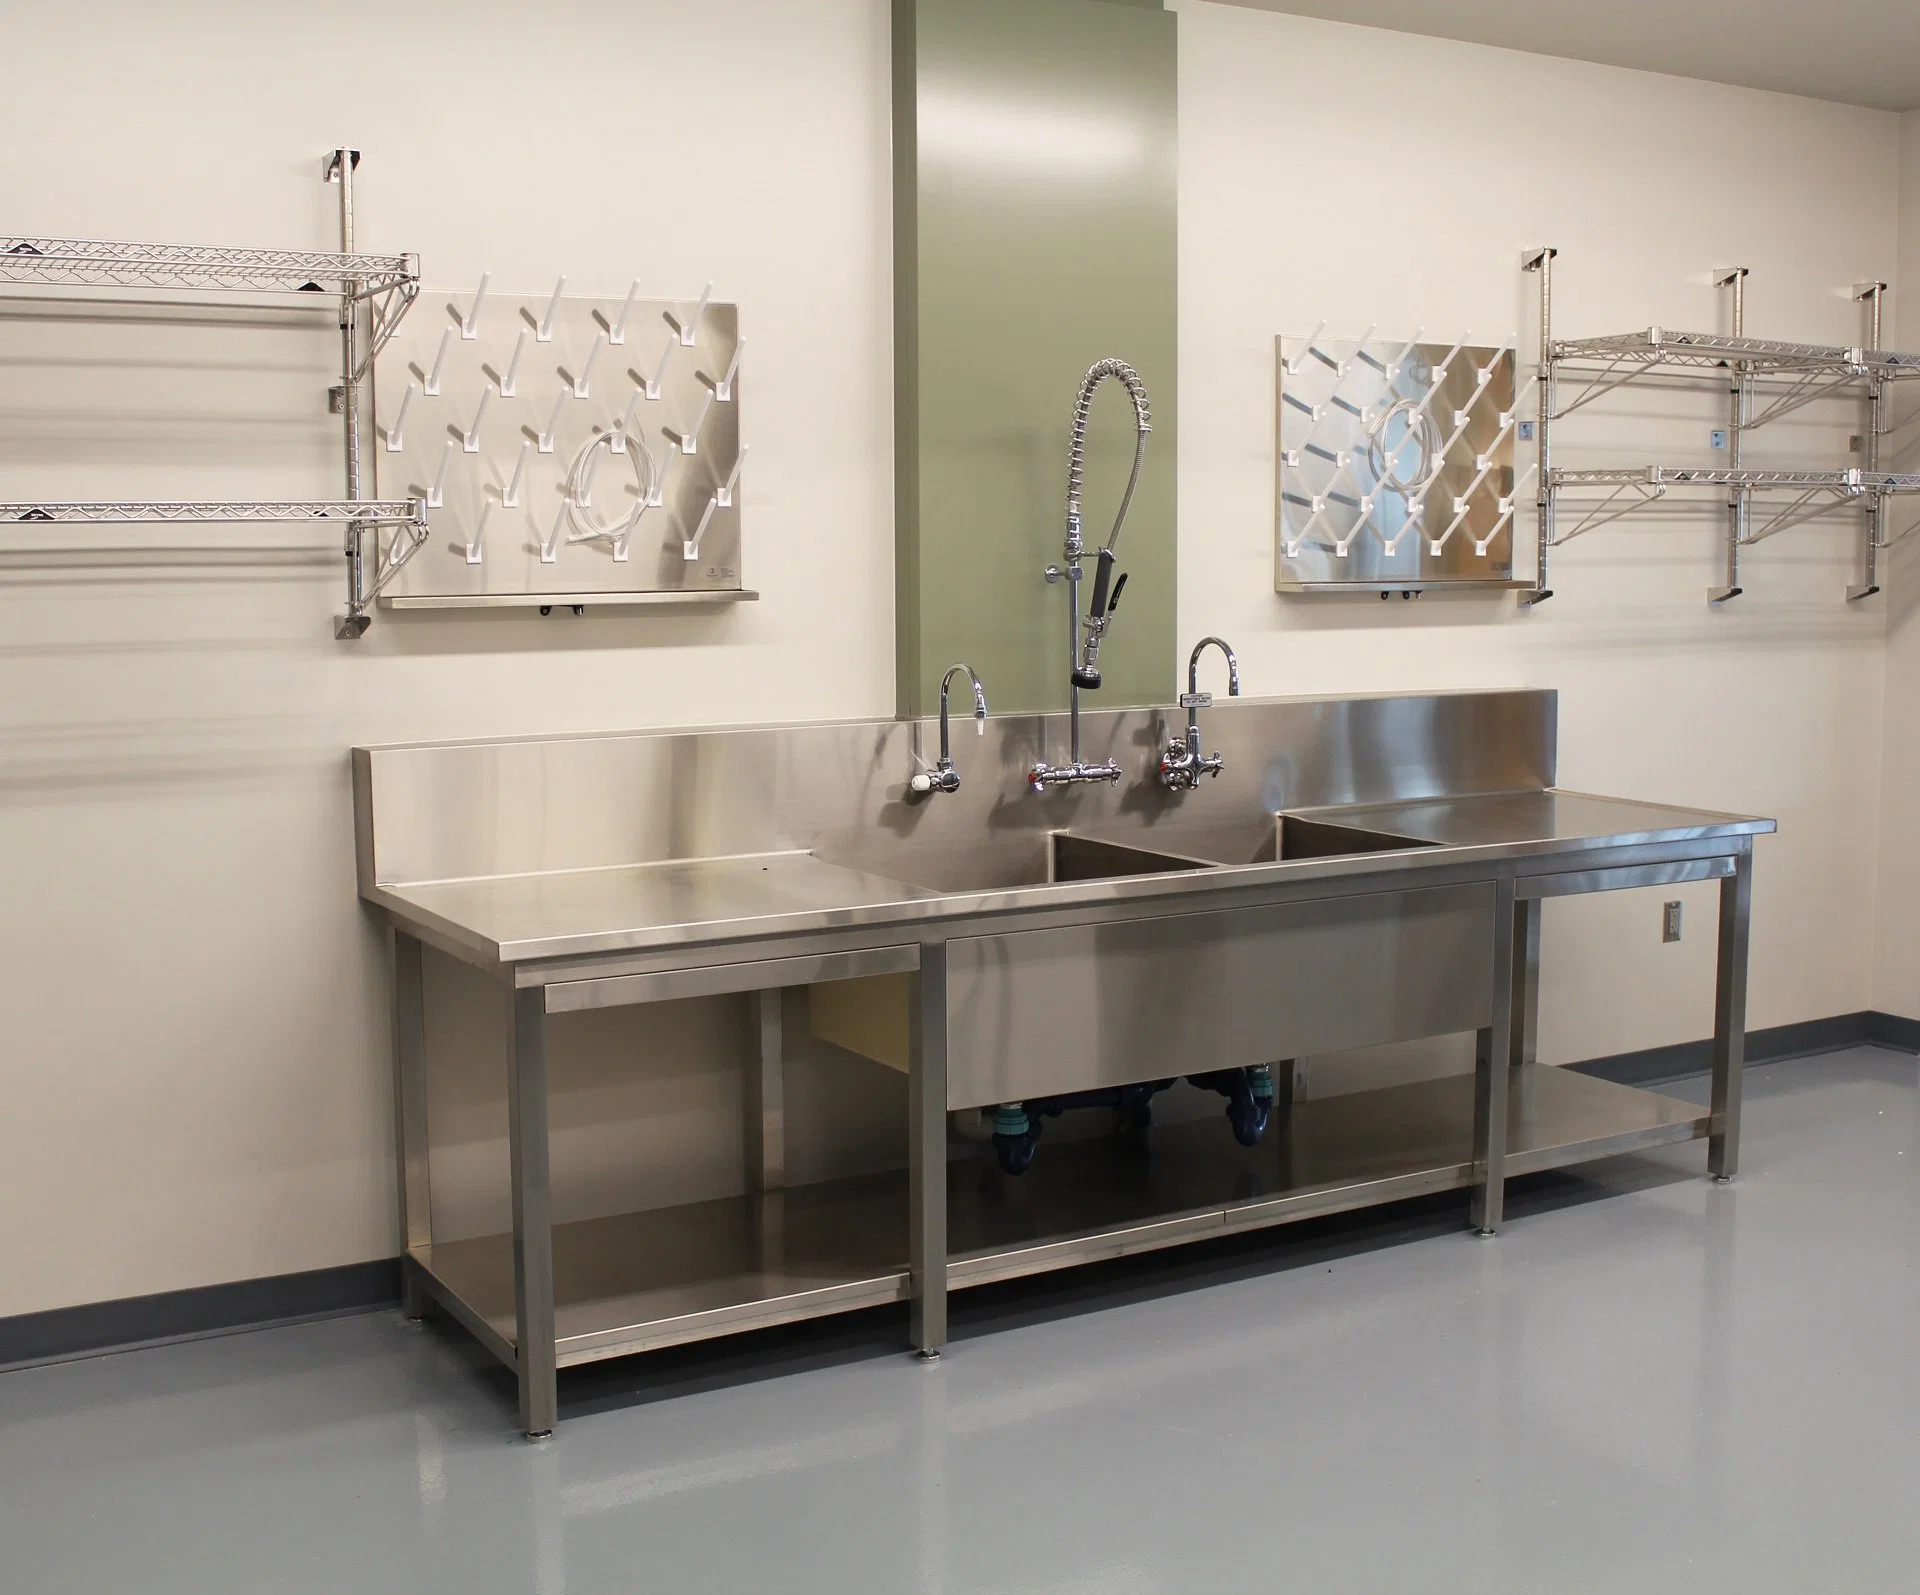 Indústria alimentar laboratórios Chem Industrial preços móveis prova de bactérias limpo Sala 304ss aço inoxidável Lab mobiliário